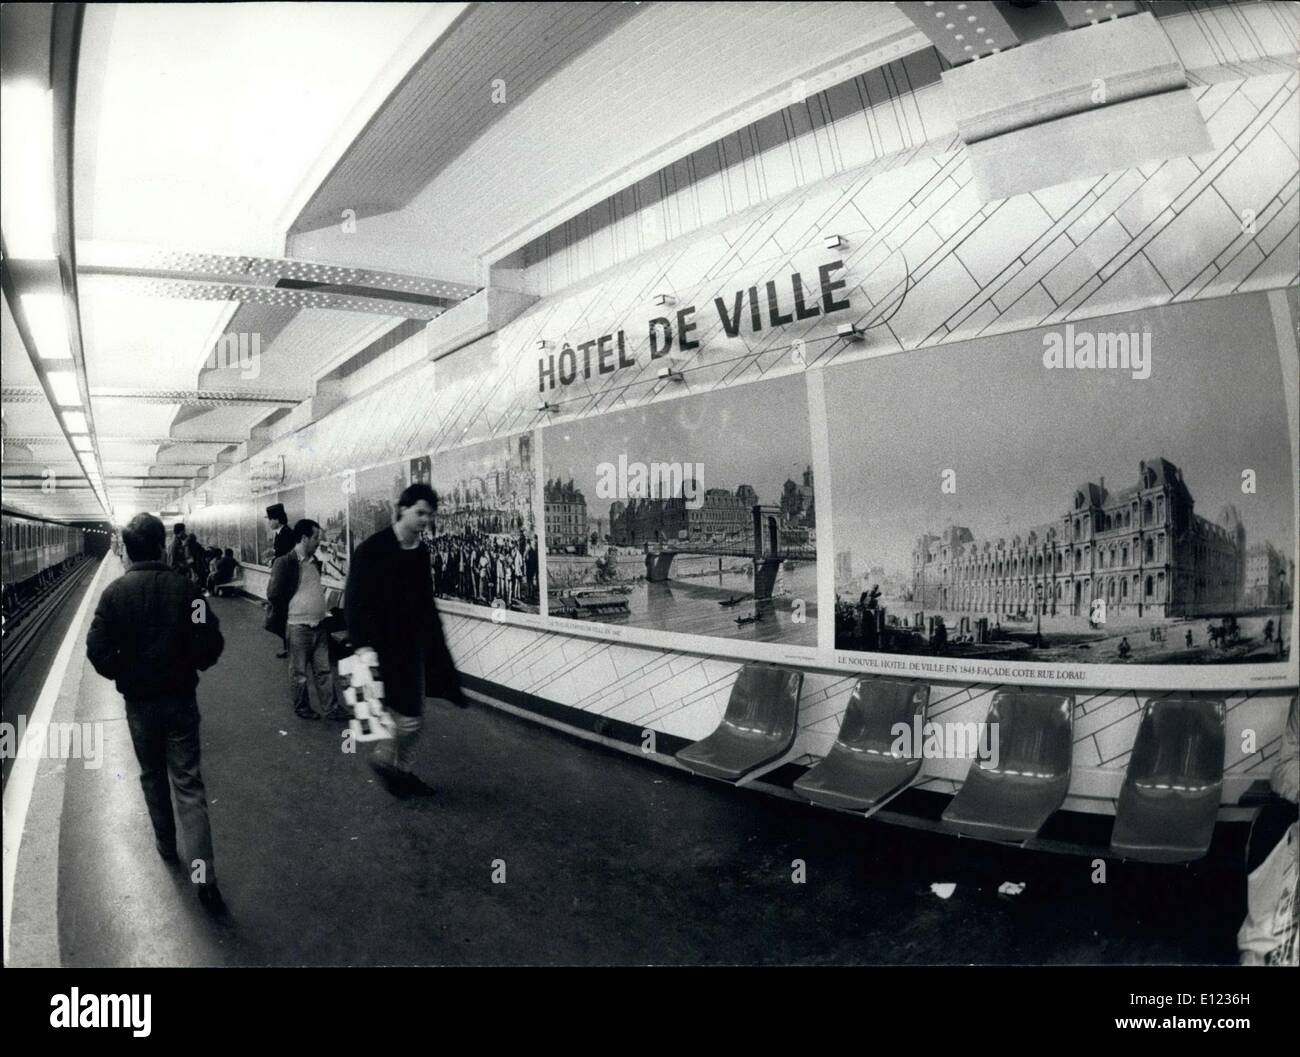 19 janvier 1984 - Paris : la station de métro Hôtel de Ville affiche reproduit Artwork Banque D'Images